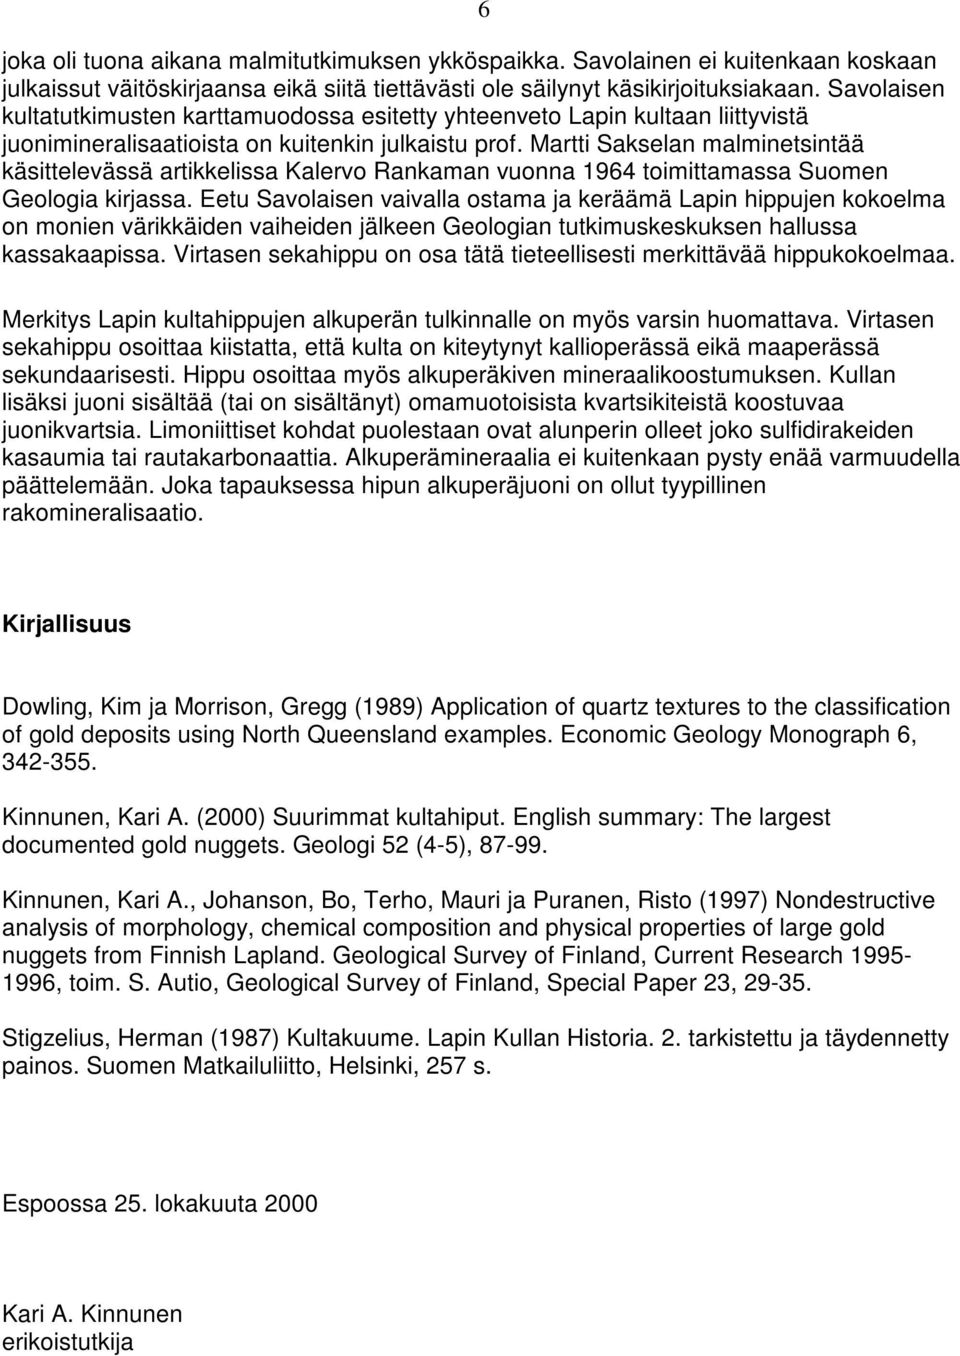 Martti Sakselan malminetsintää käsittelevässä artikkelissa Kalervo Rankaman vuonna 1964 toimittamassa Suomen Geologia kirjassa.